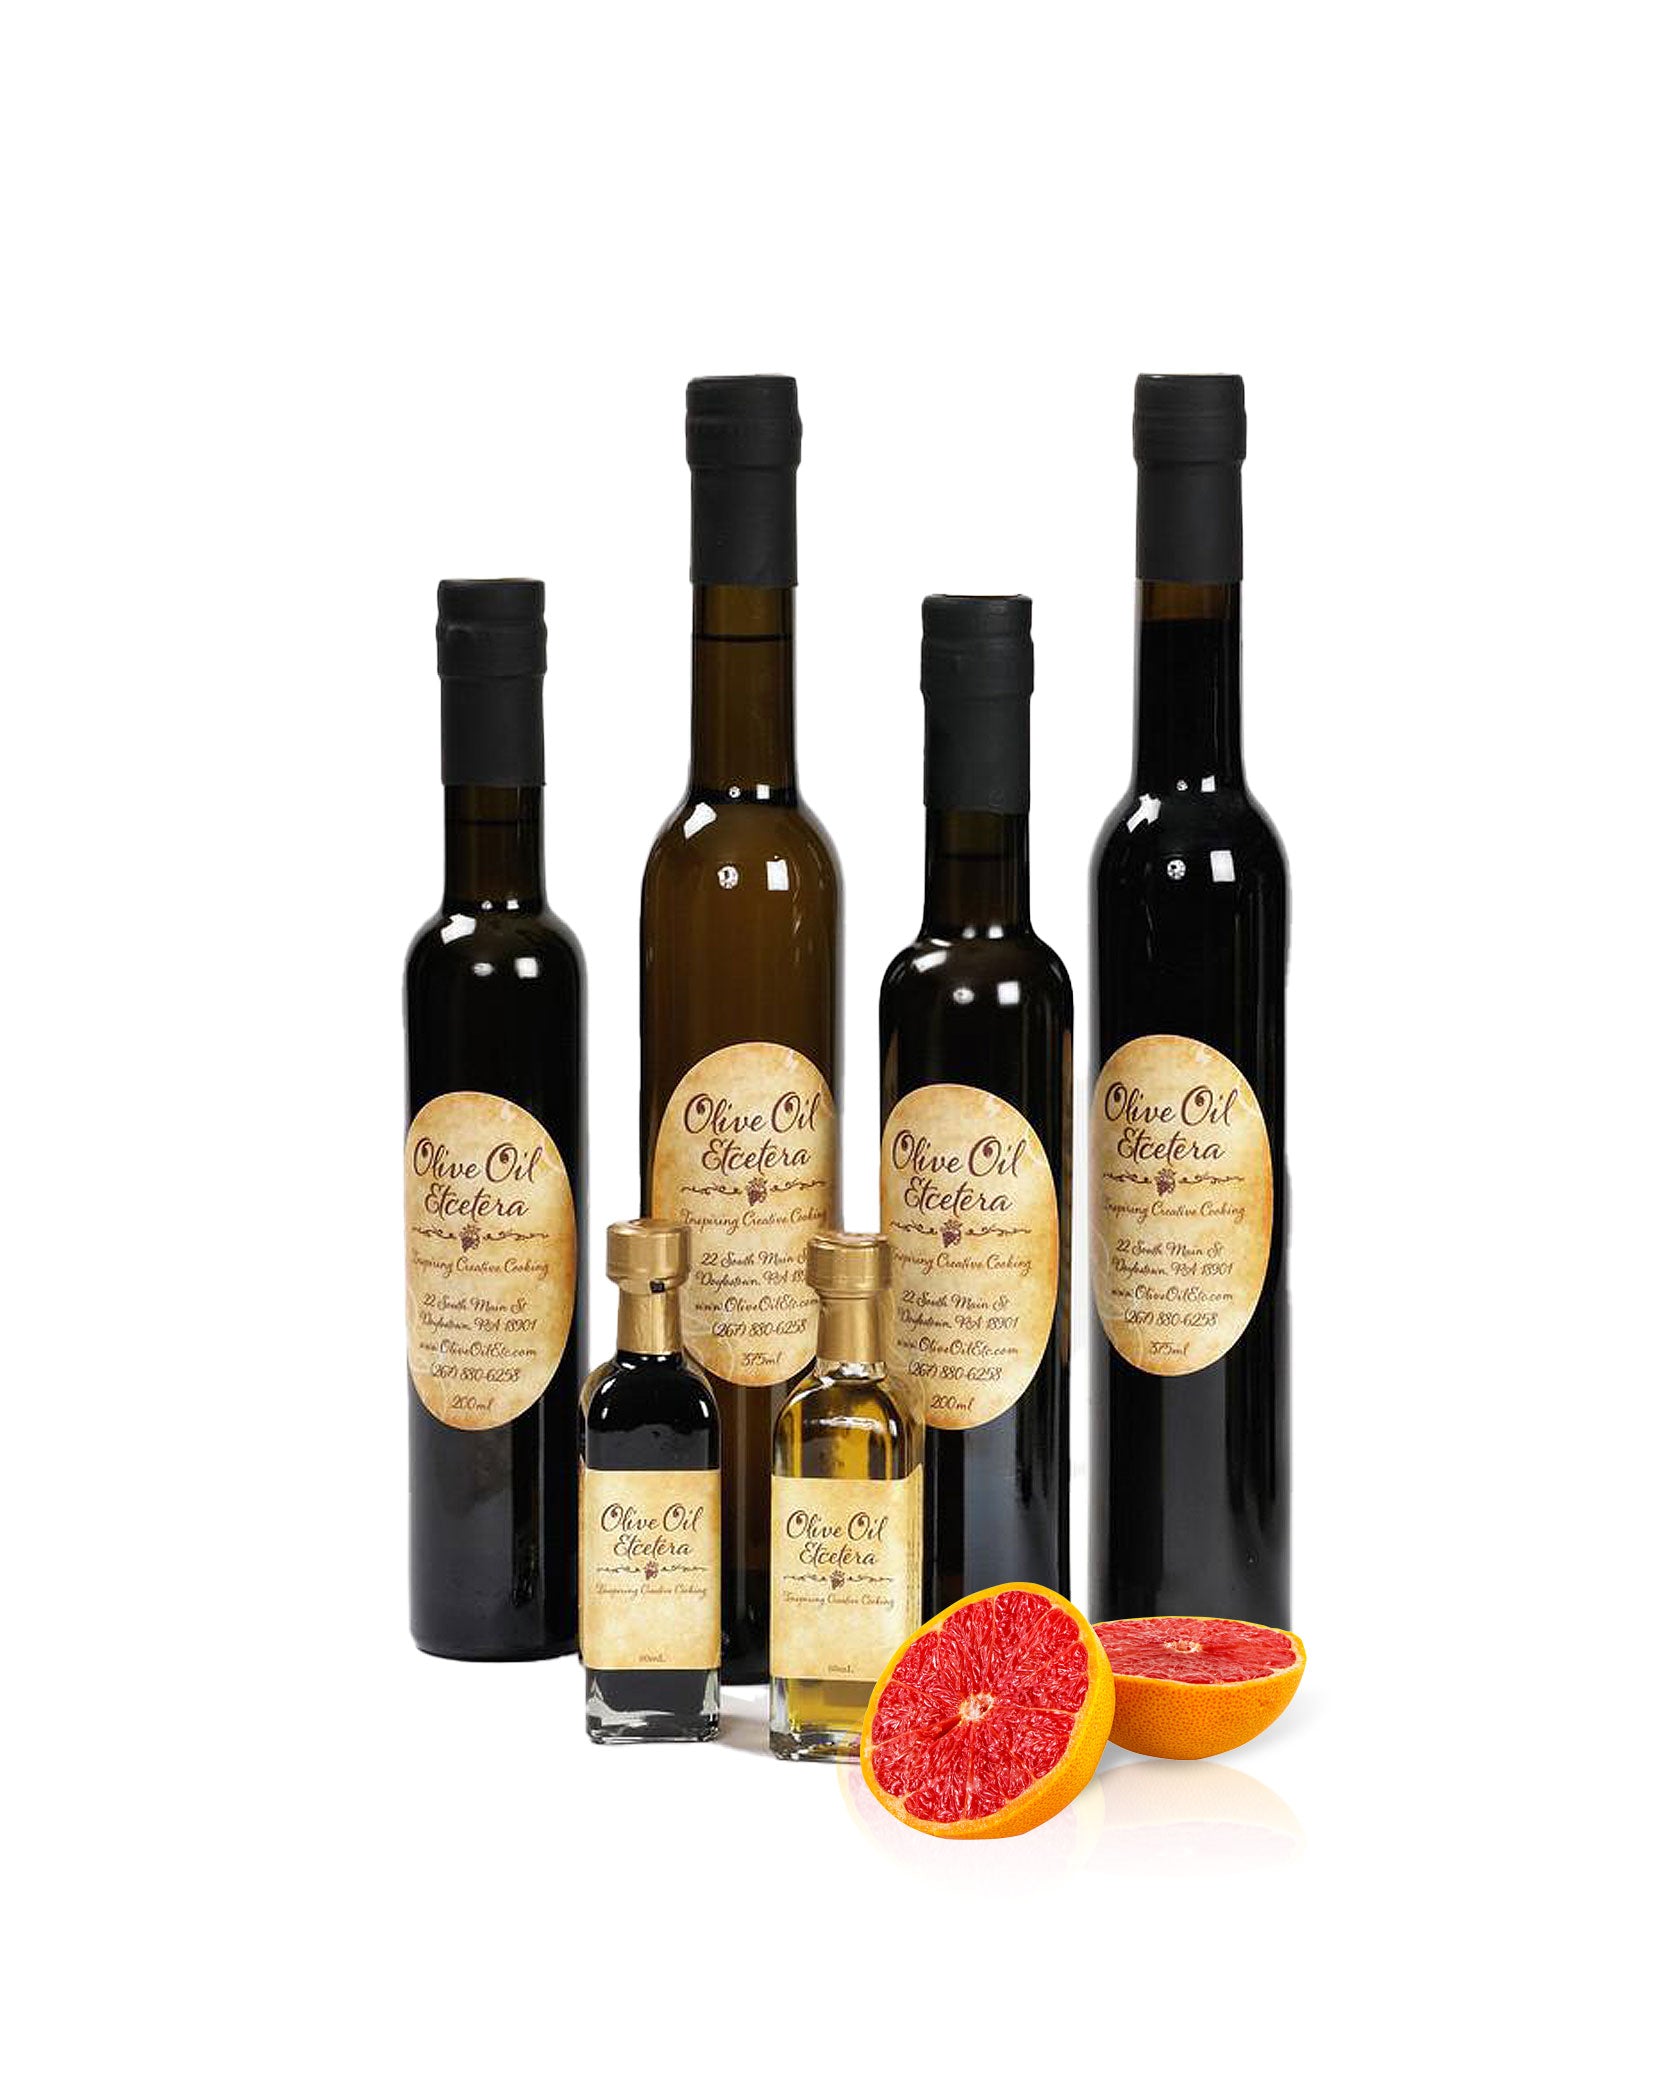 Blood Orange Olive Oil - Olive Oil Etcetera 